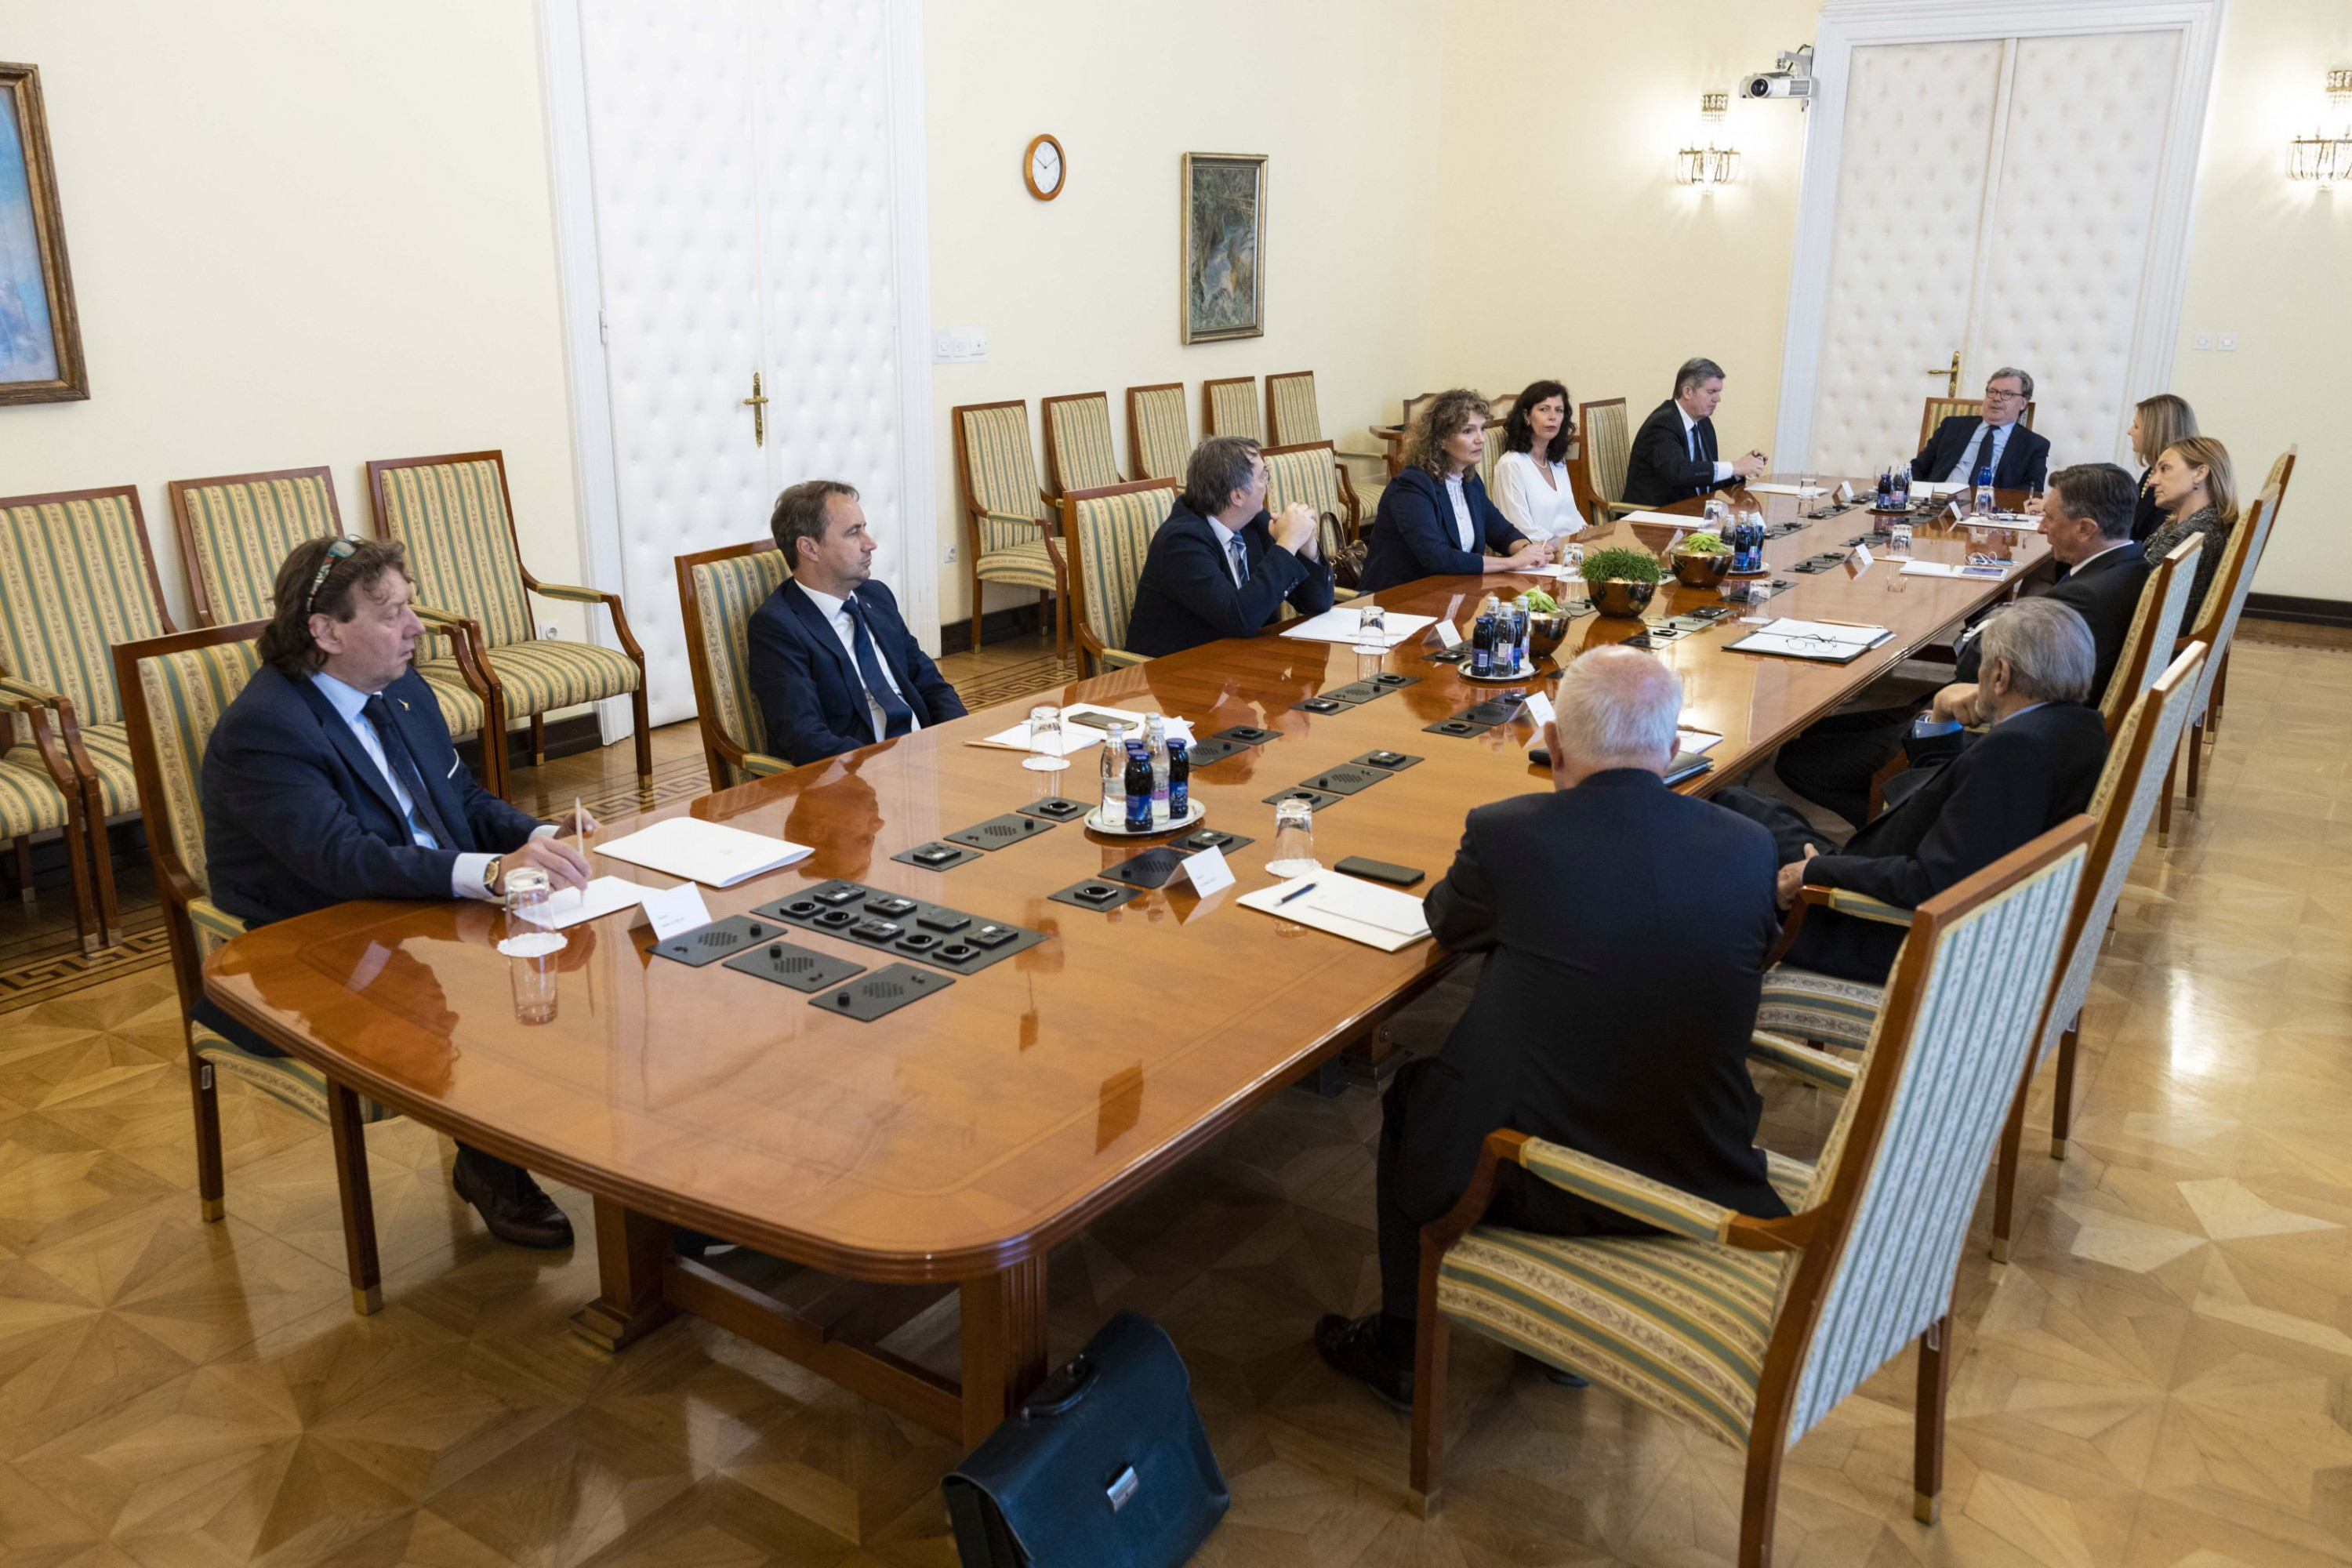 Pogovor predsednika Pahorja s predstavniki Slovencev iz Italije